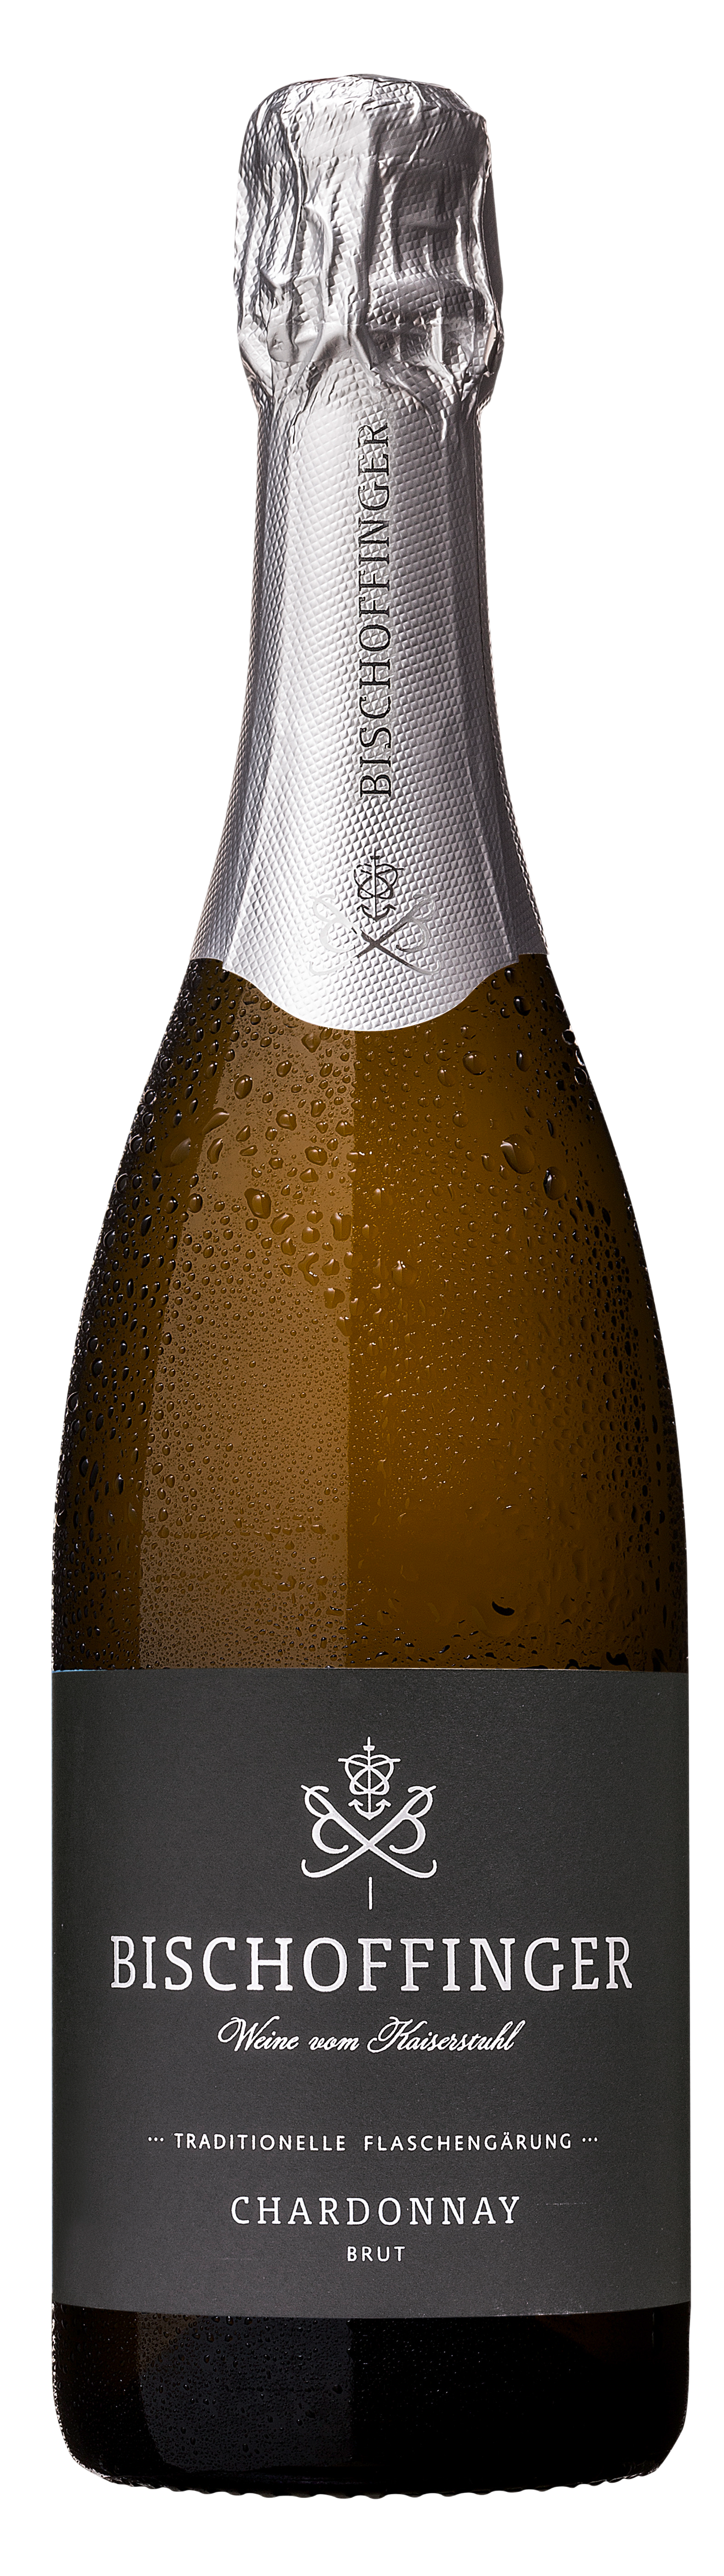 Bischoffinger Chardonnay Brut 2020